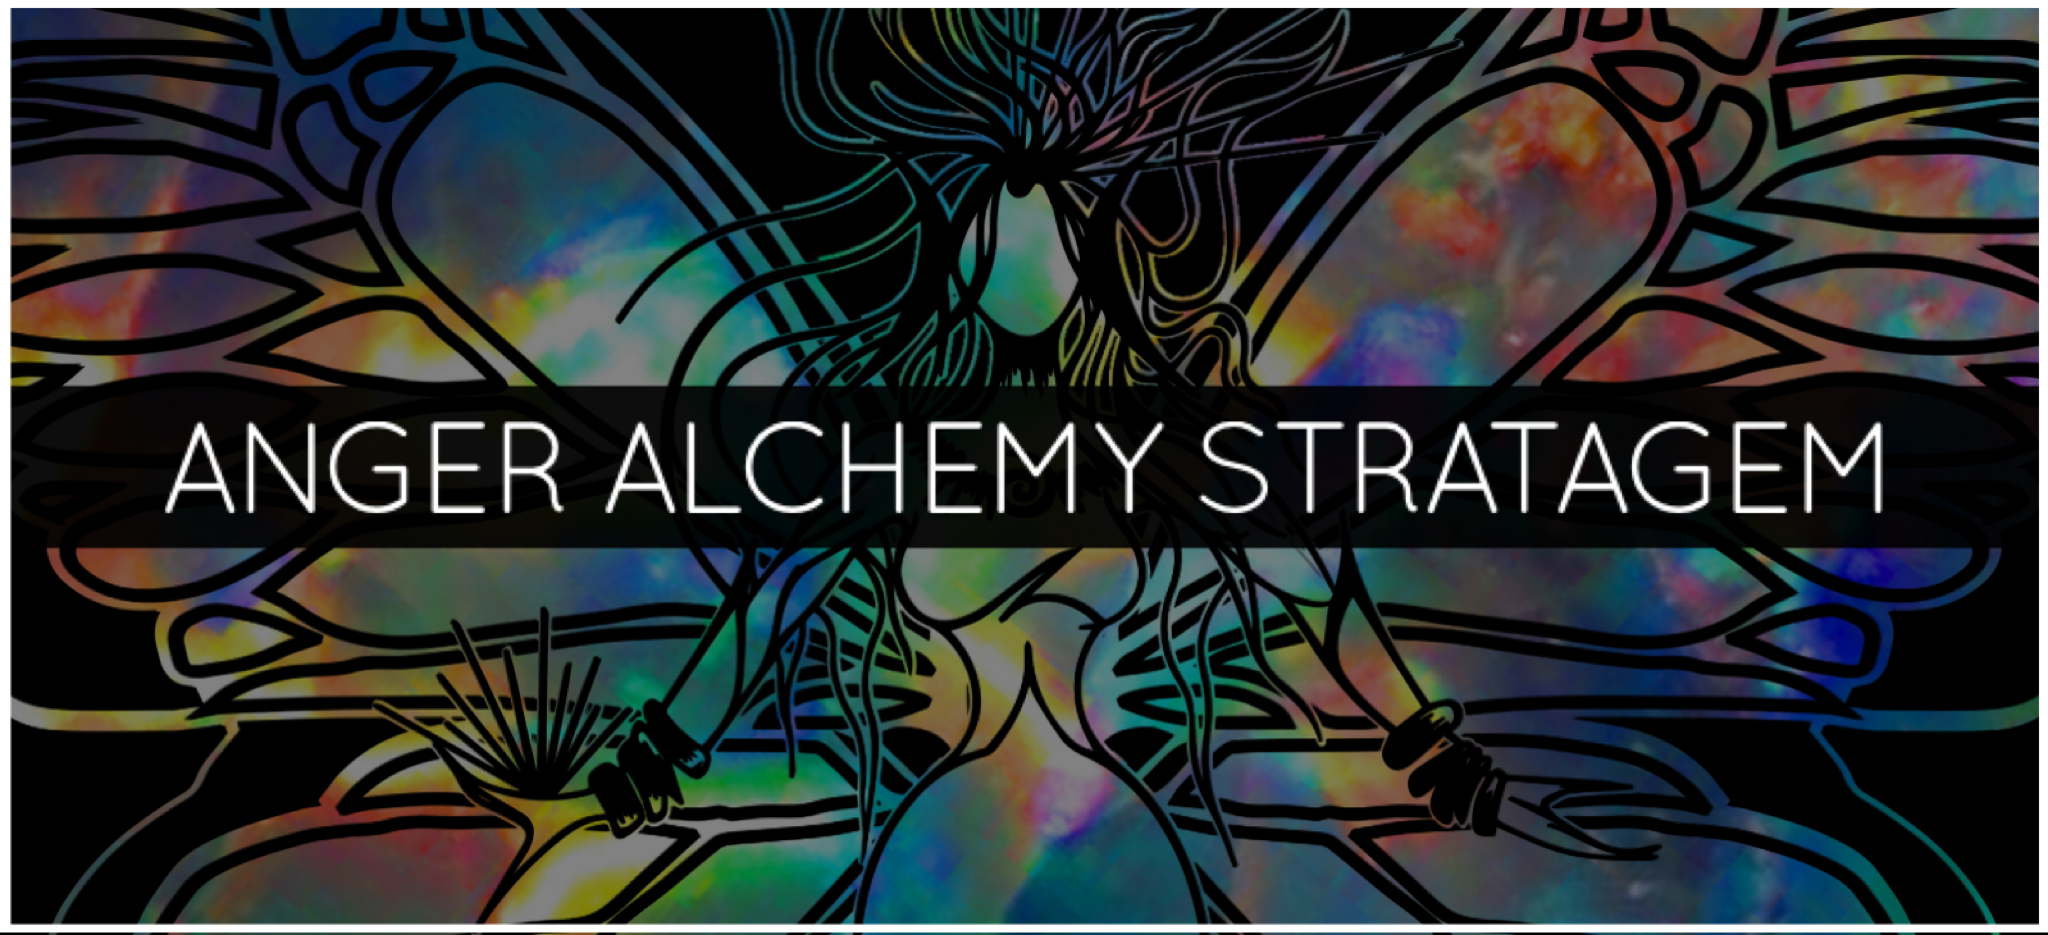 ANGER ALCHEMY STRATAGEM